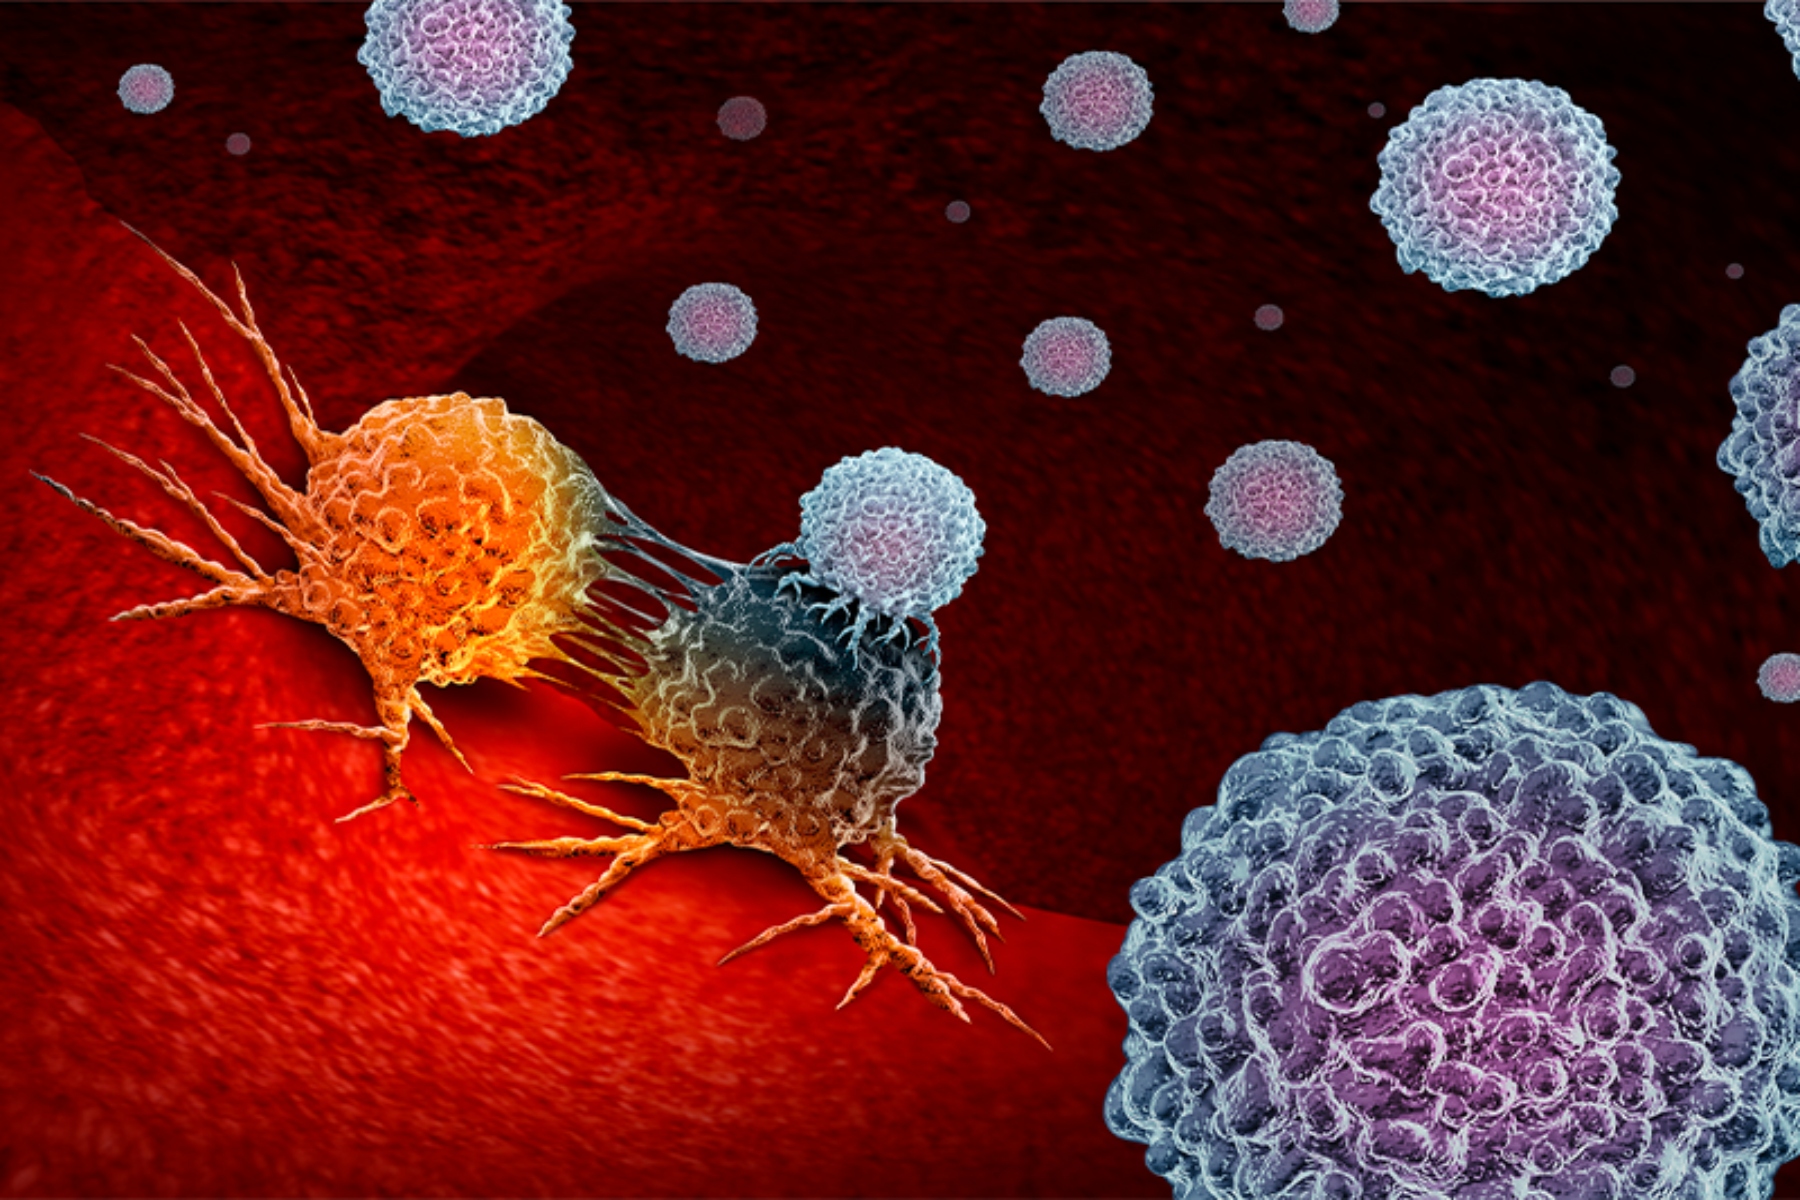 Καρκίνος ανοσοποιητικό σύστημα: Πώς αντεπιτίθεται το σώμα στον καρκίνο;